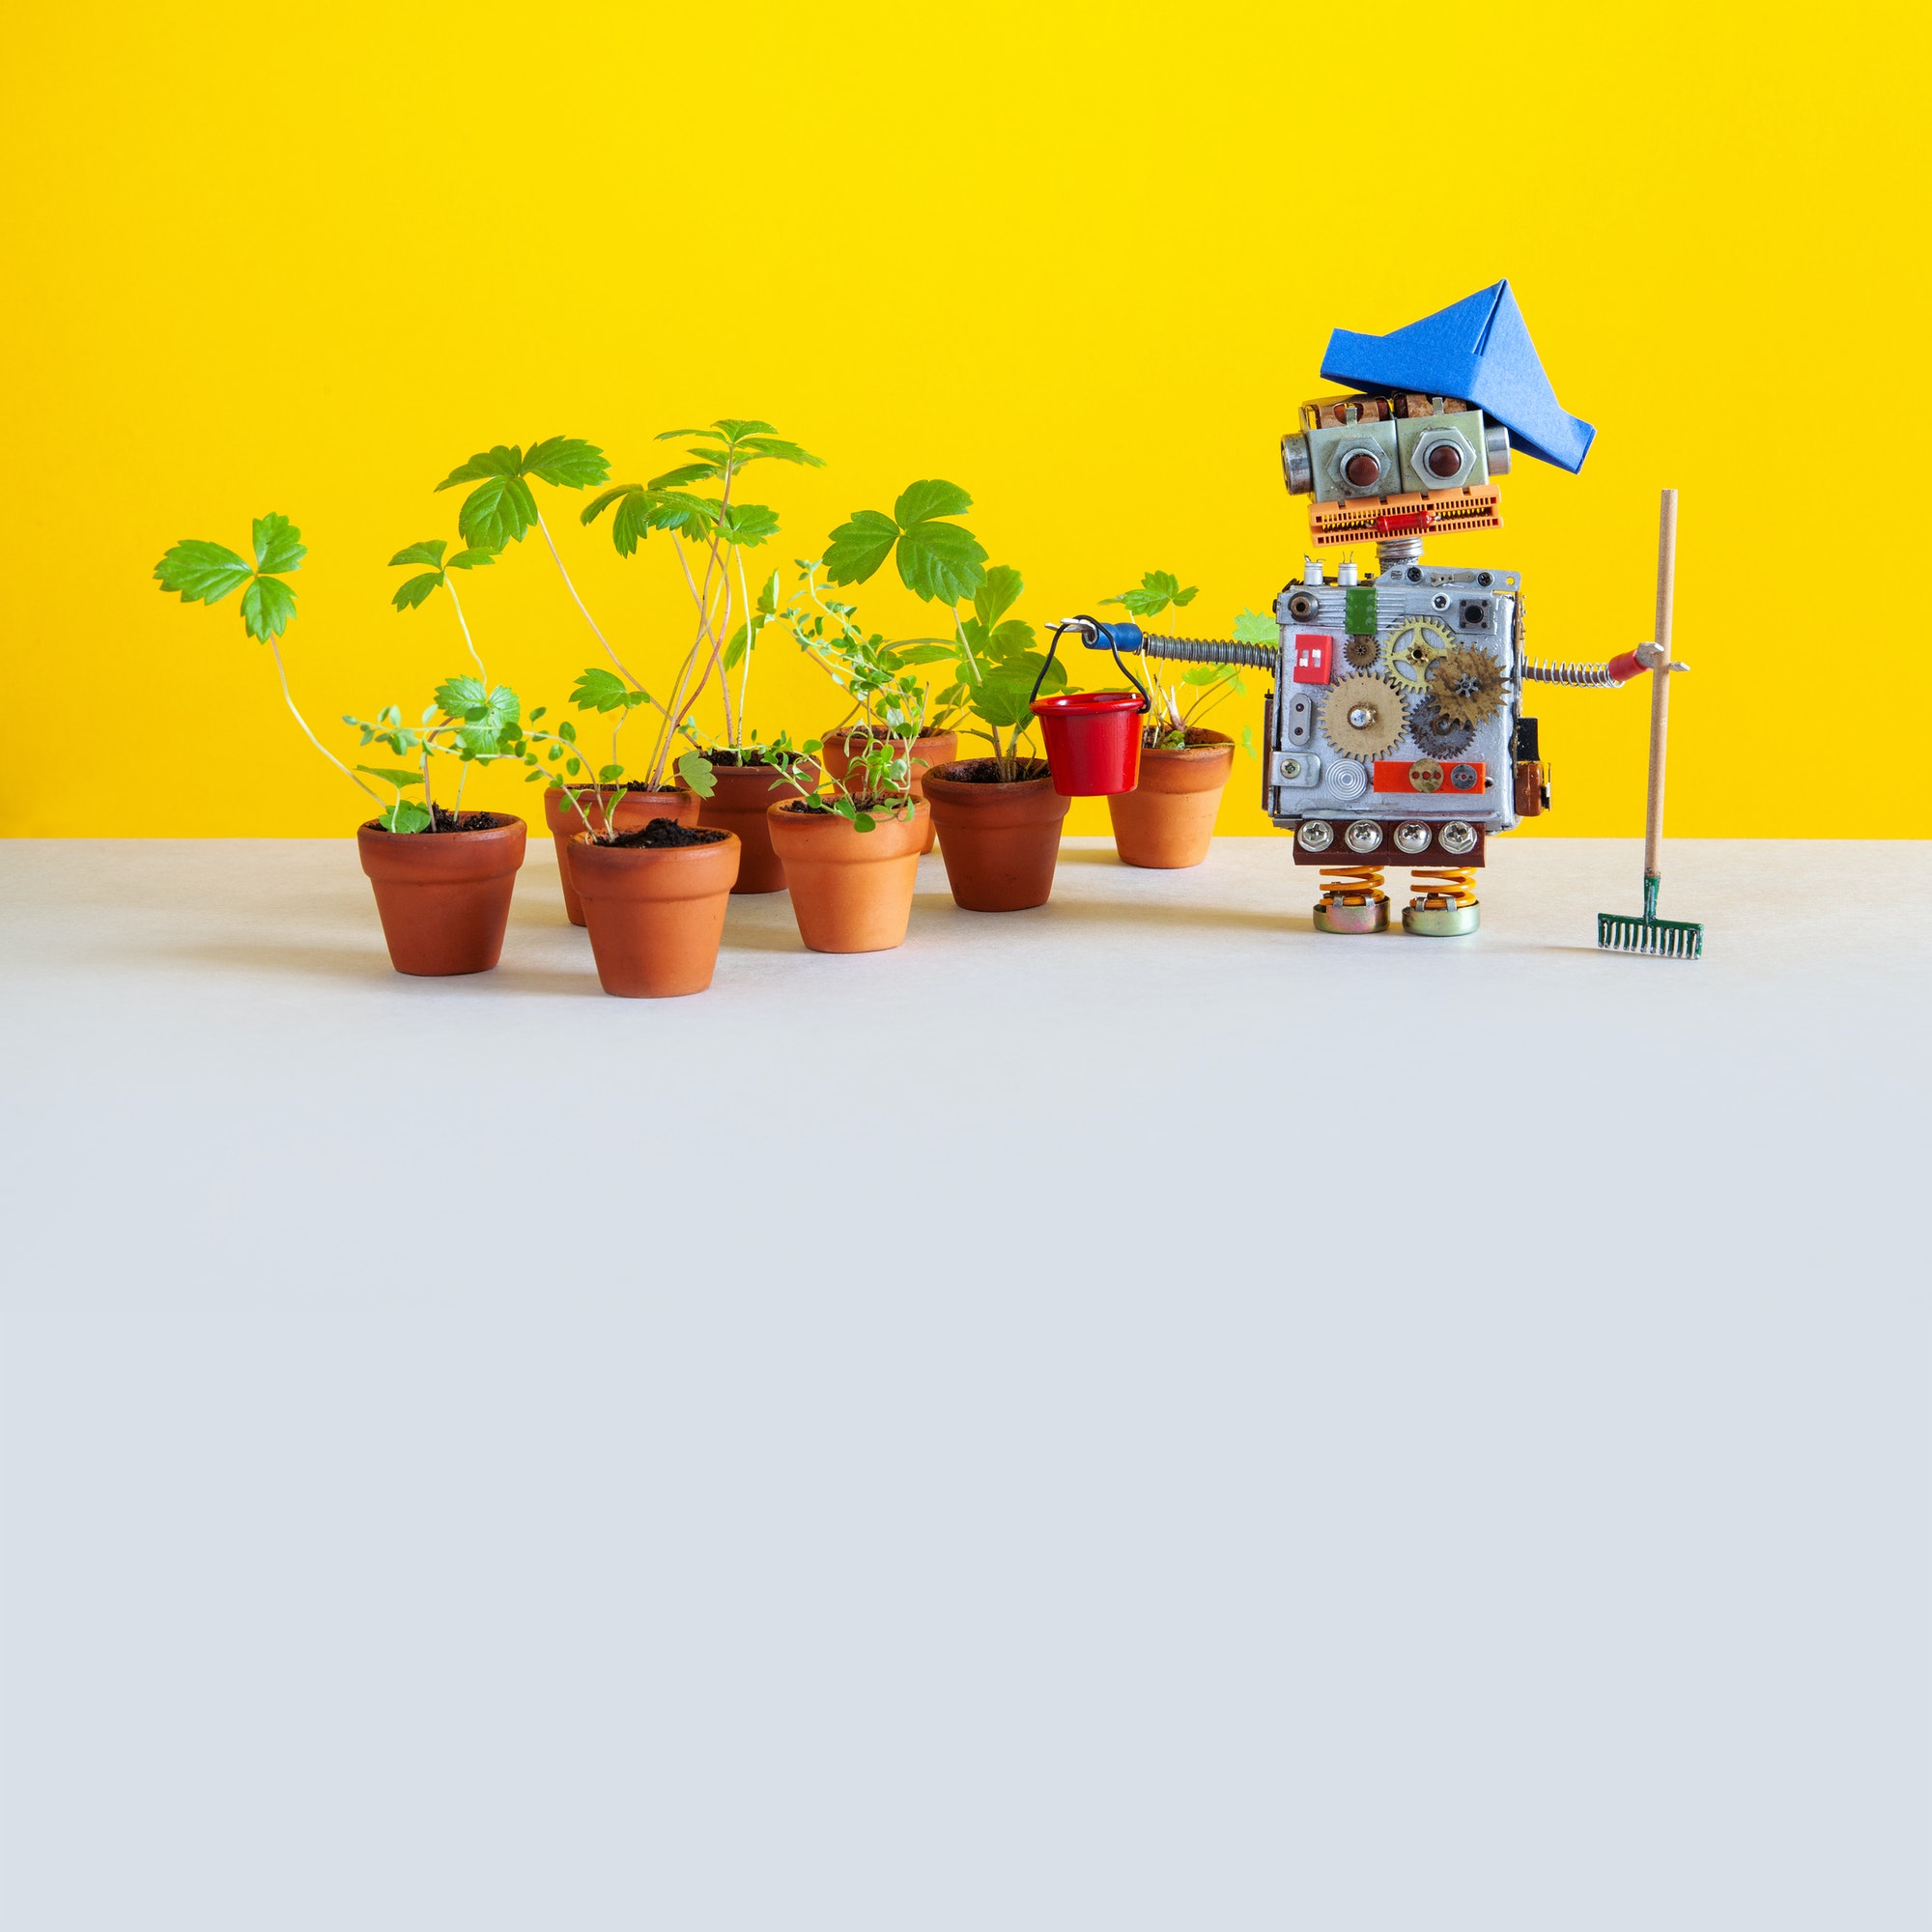 Robot gardener with gardening tools.